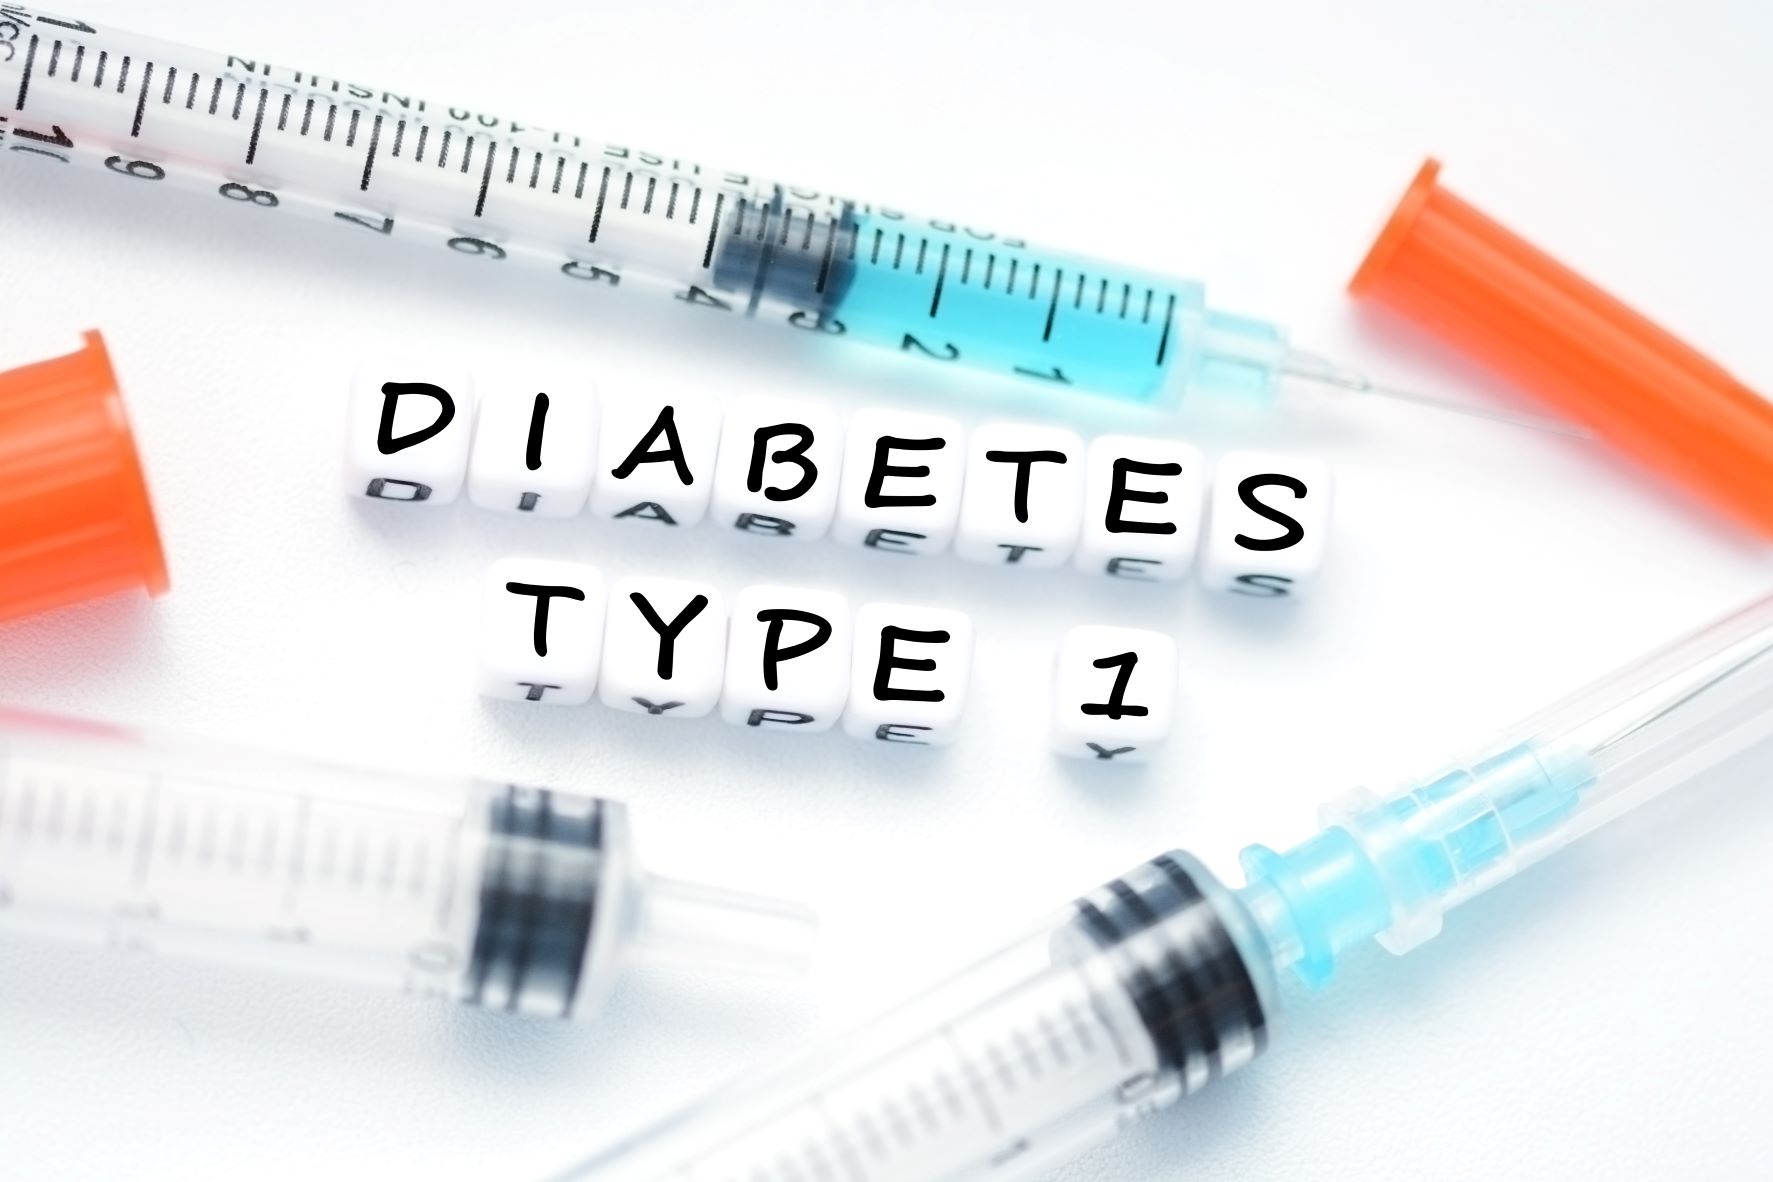 Gesundheitspsychologie untersucht problematisches Essverhalten bei Menschen mit Diabetes Typ 1 – Teilnehmende gesucht